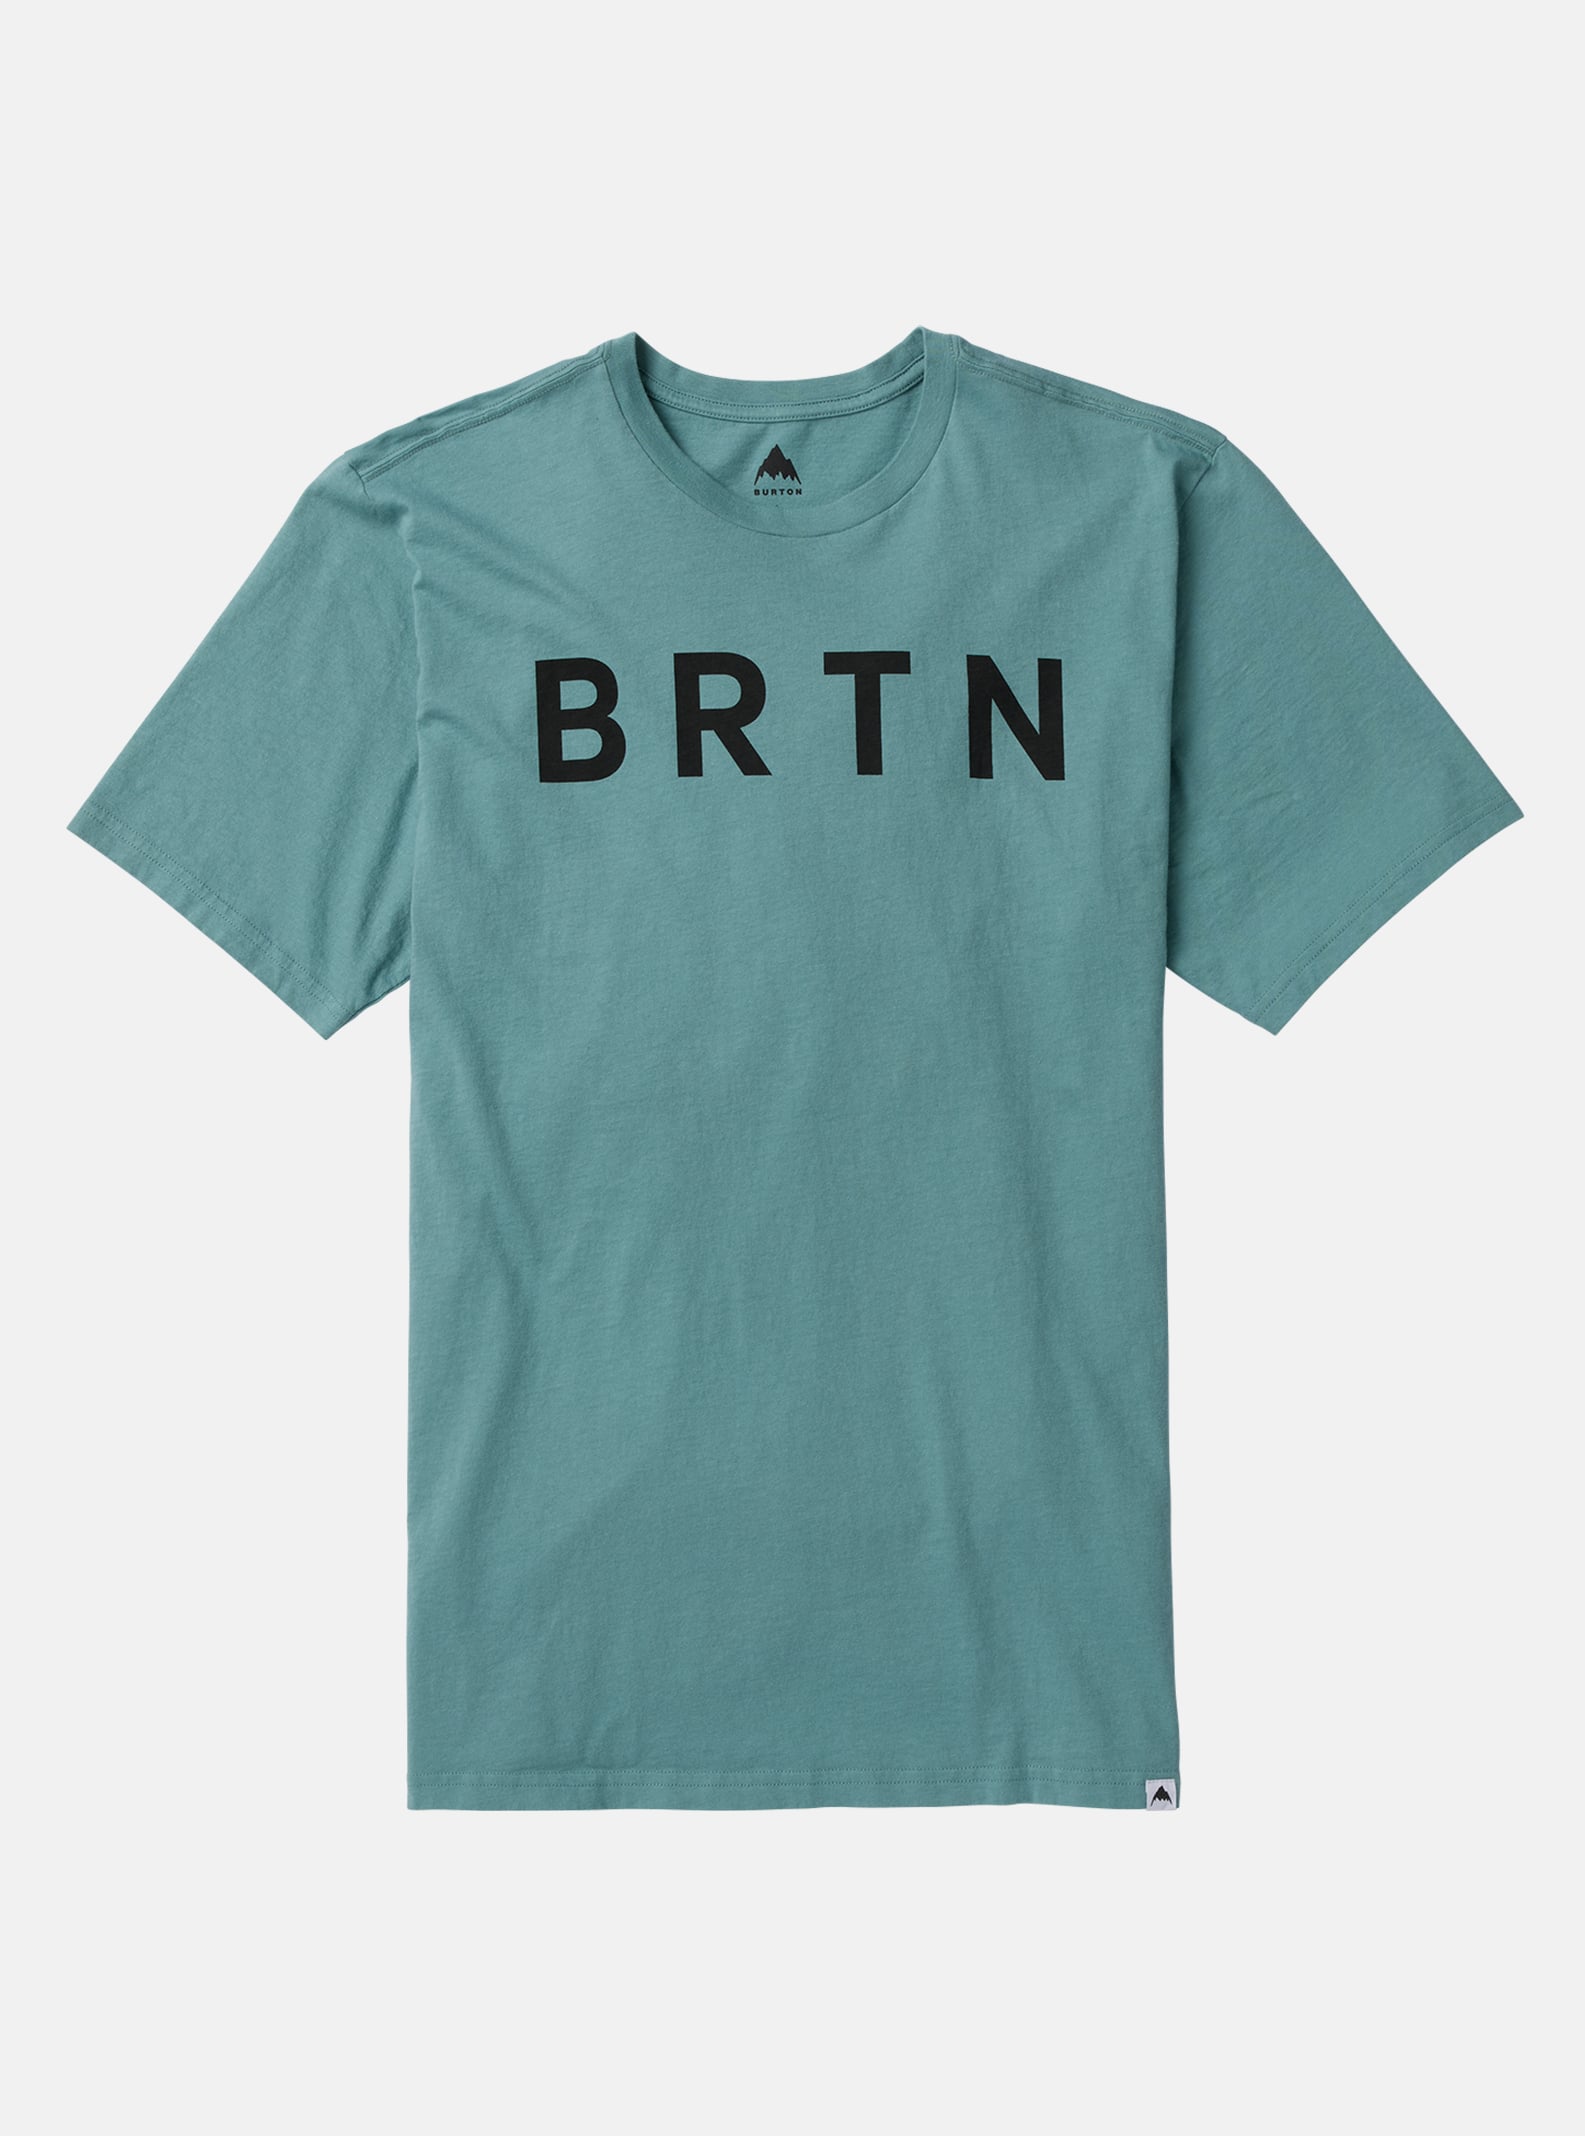 Burton BRTN Short Sleeve T-Shirt, M